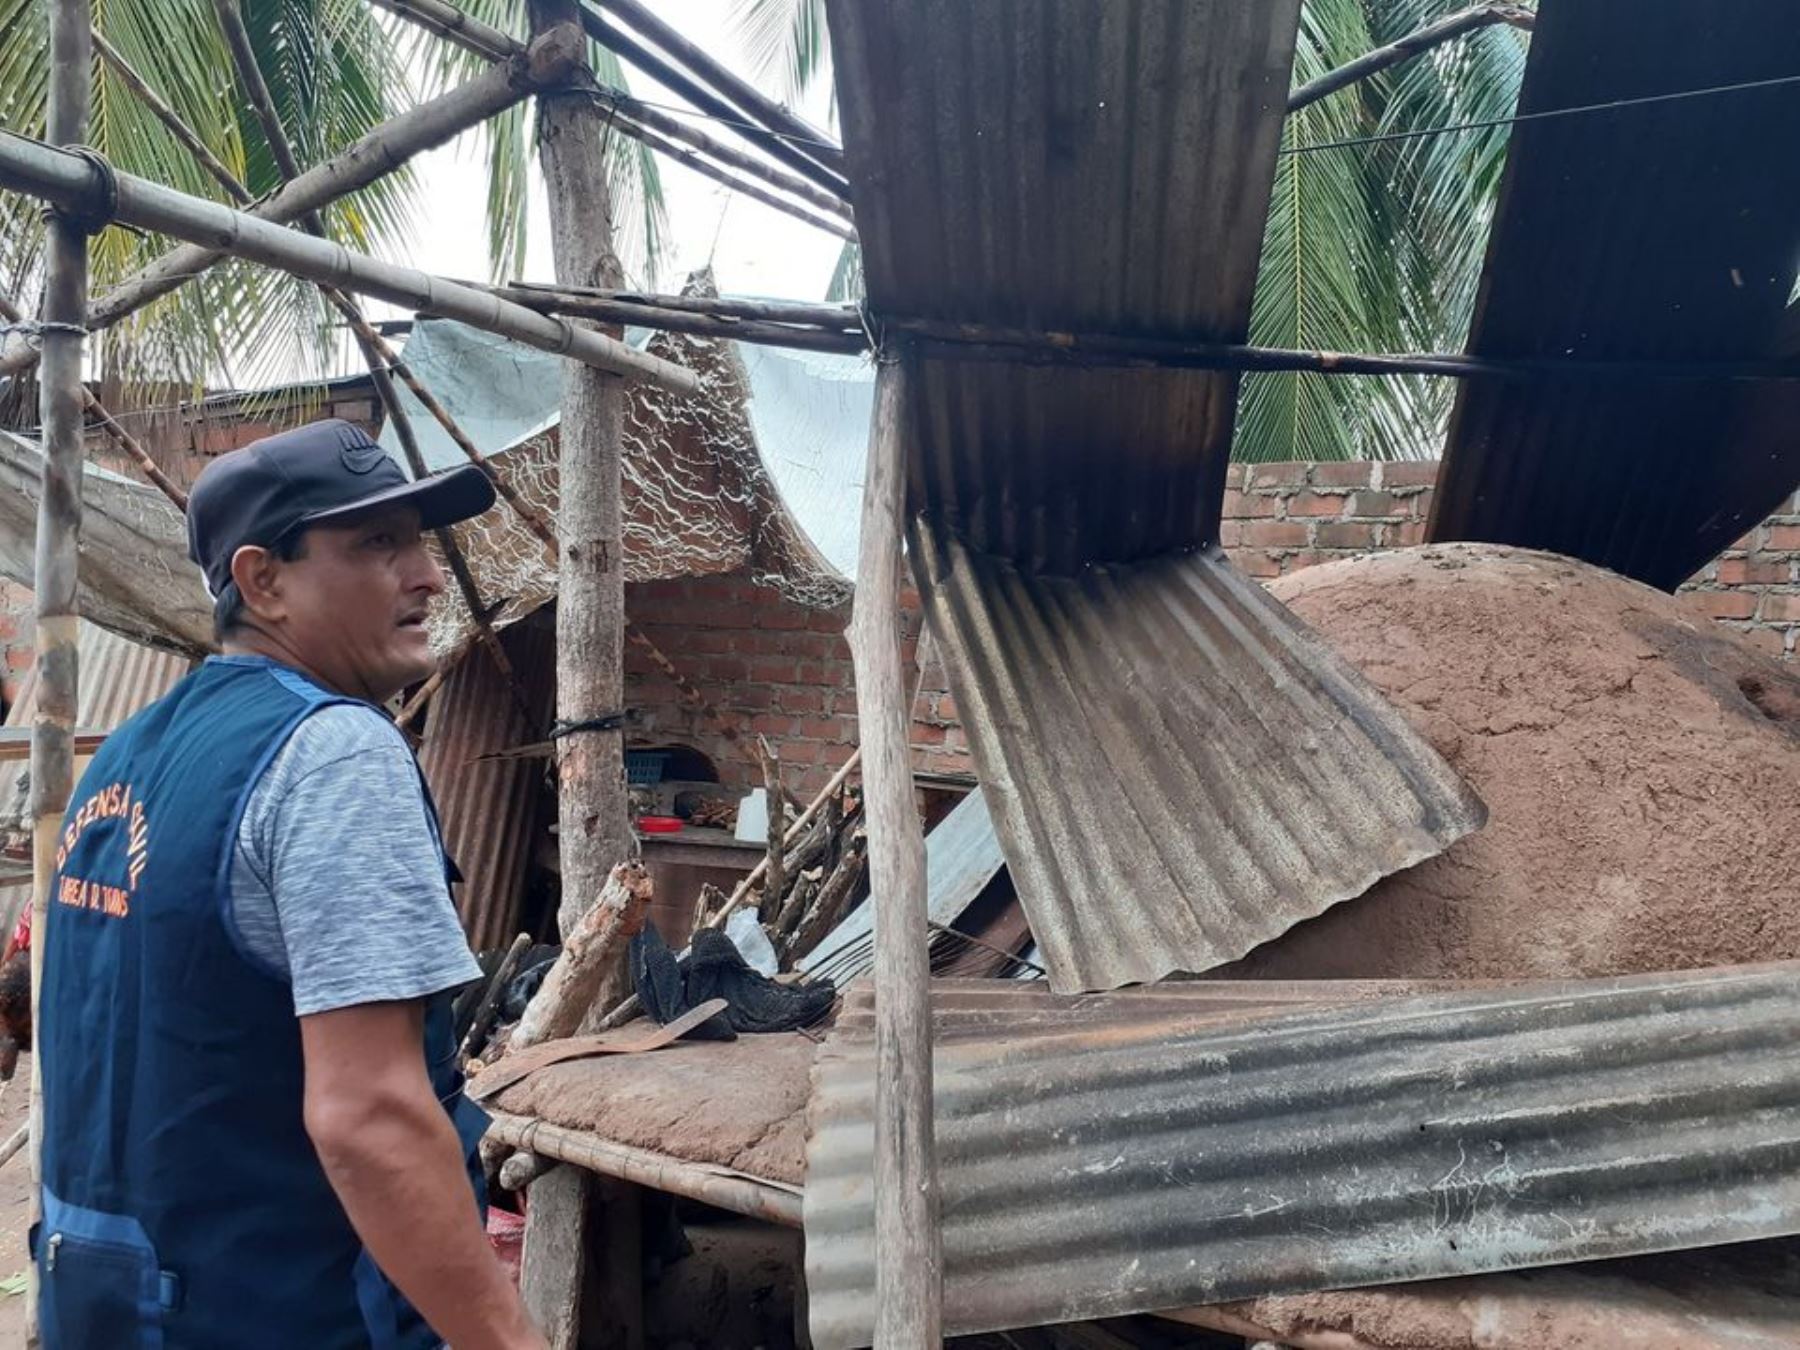 Vientos fuertes en los distritos de Papaplaya y Caspisapa, en la región San Martín, han ocasionado daños materiales. Foto: ANDINA/Difusión